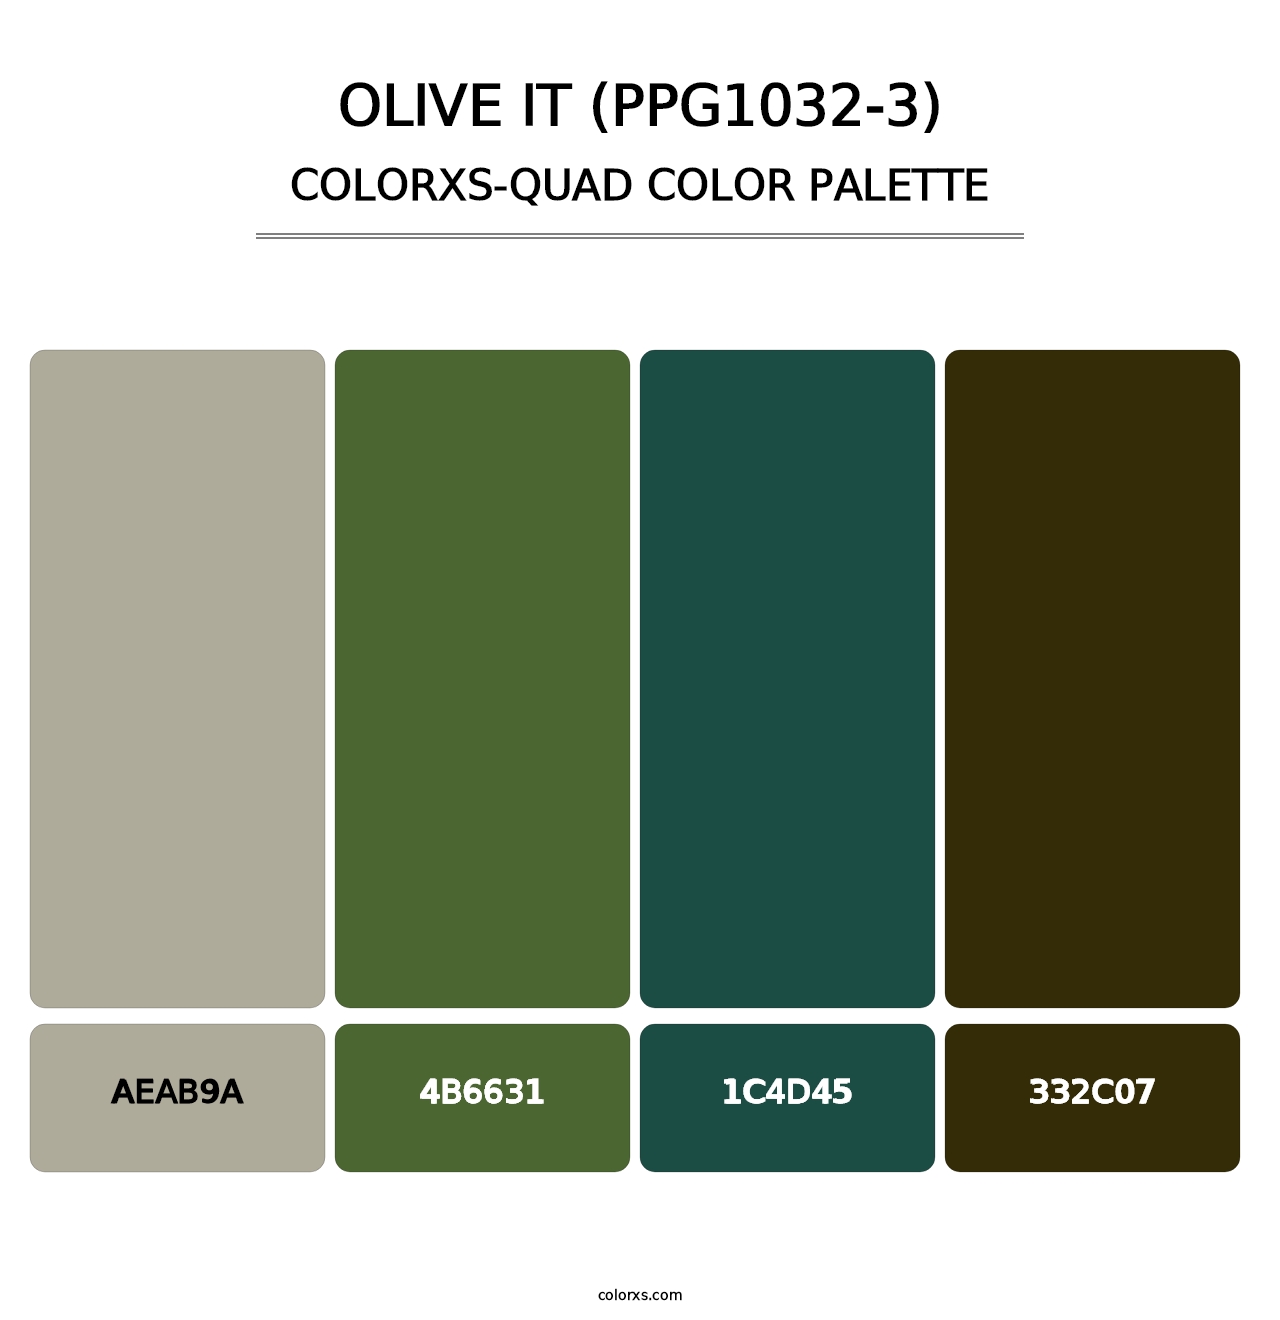 Olive It (PPG1032-3) - Colorxs Quad Palette